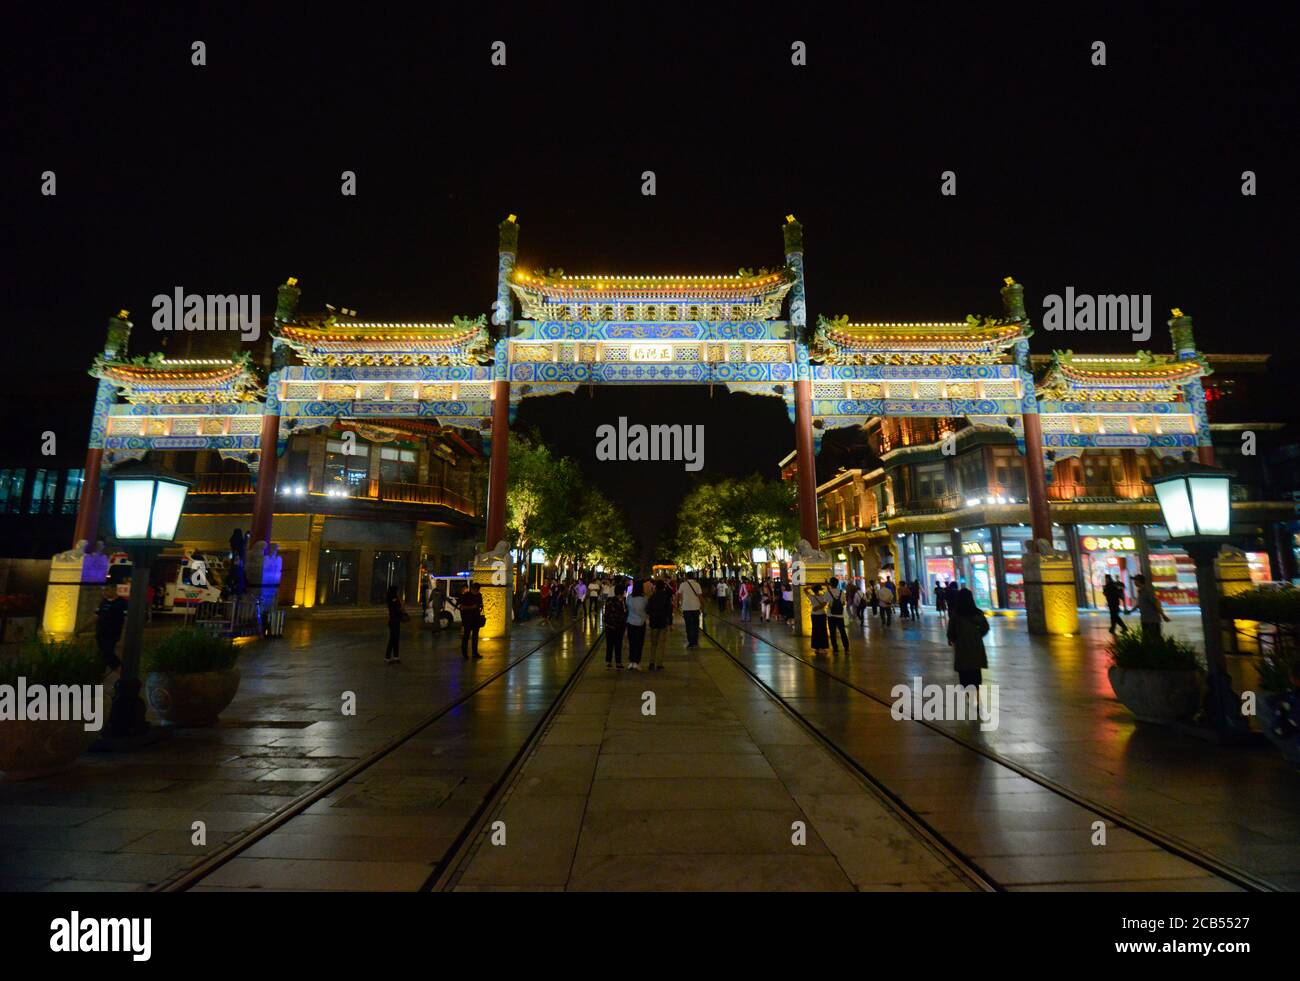 Pechino: Arco cinese all'inizio della via Qianmen, di notte. Cina Foto Stock